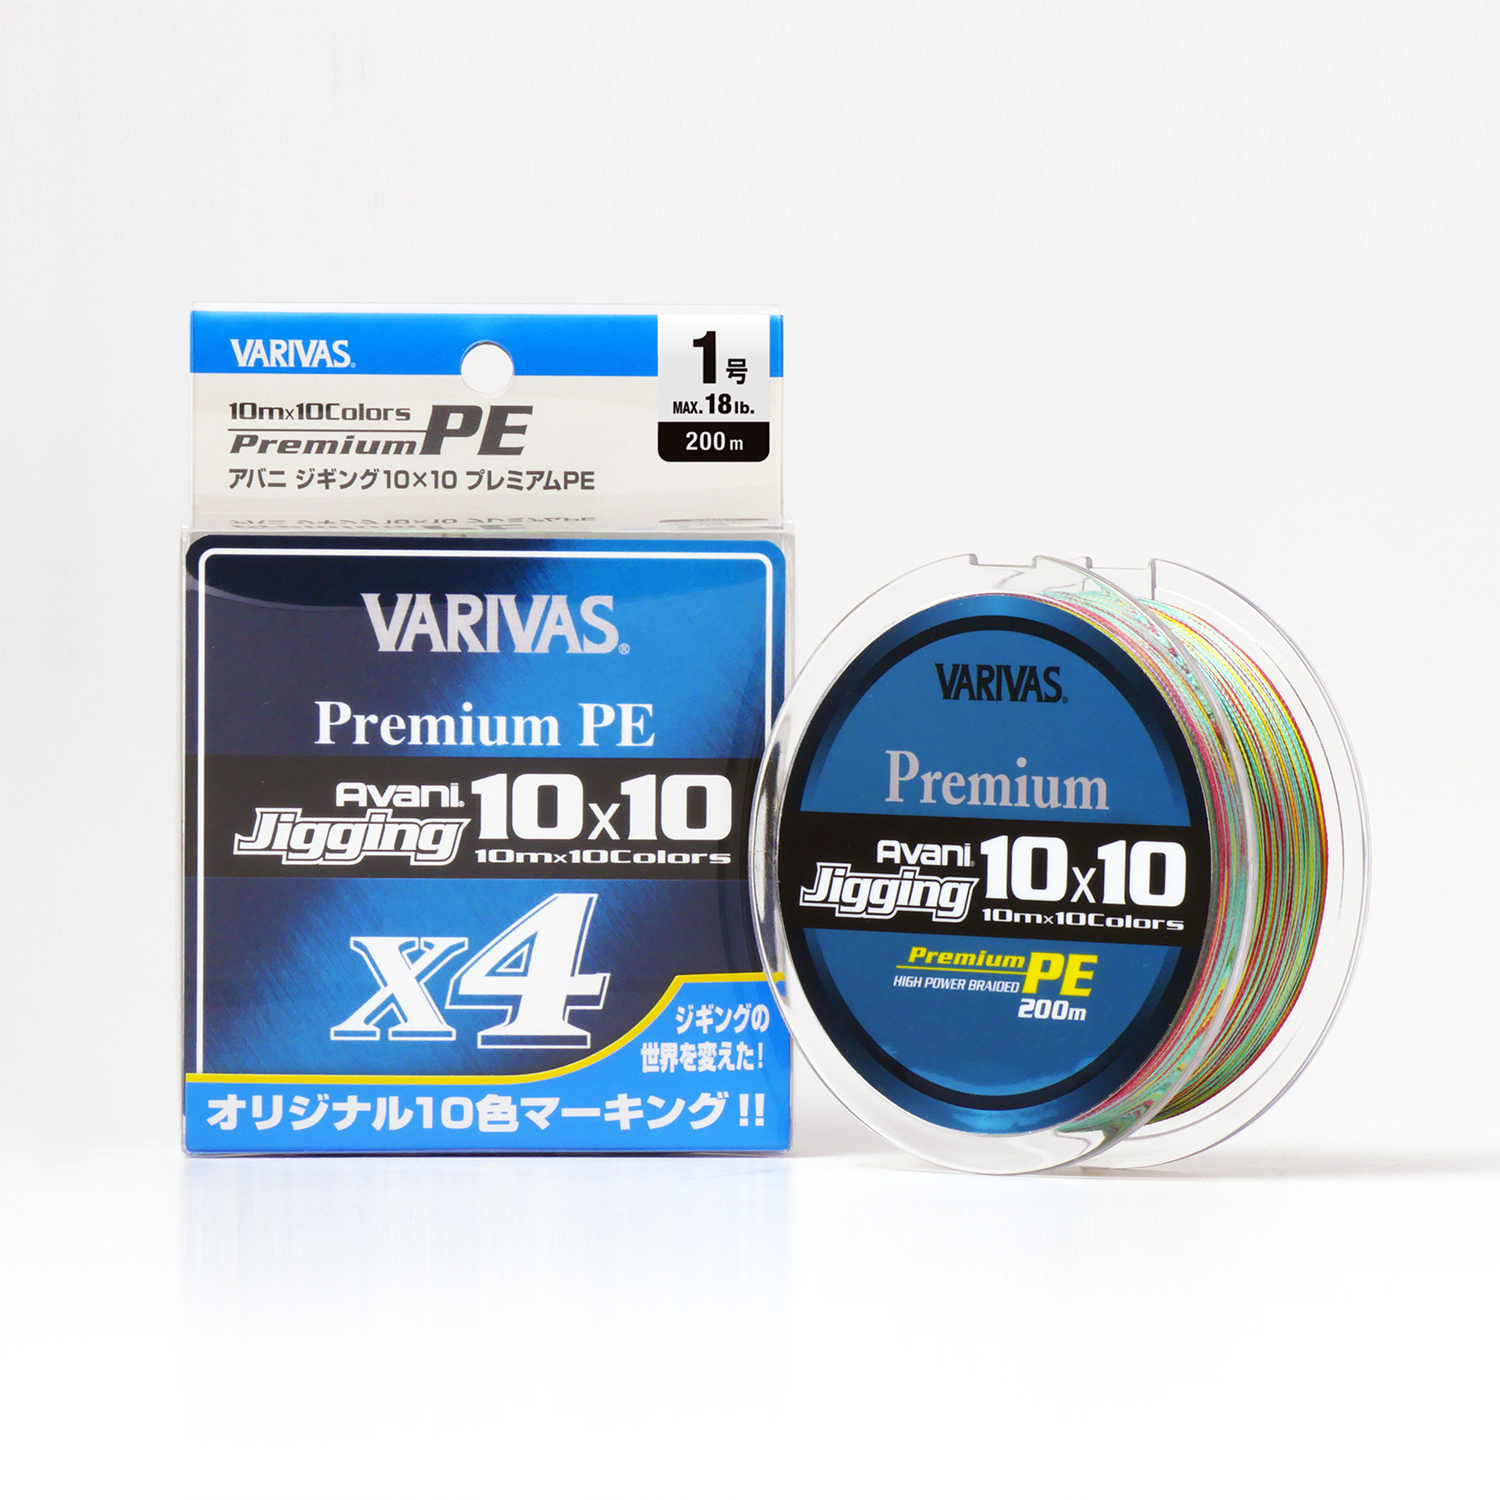 Avani Jigging 10x10 [Premium PE] X4